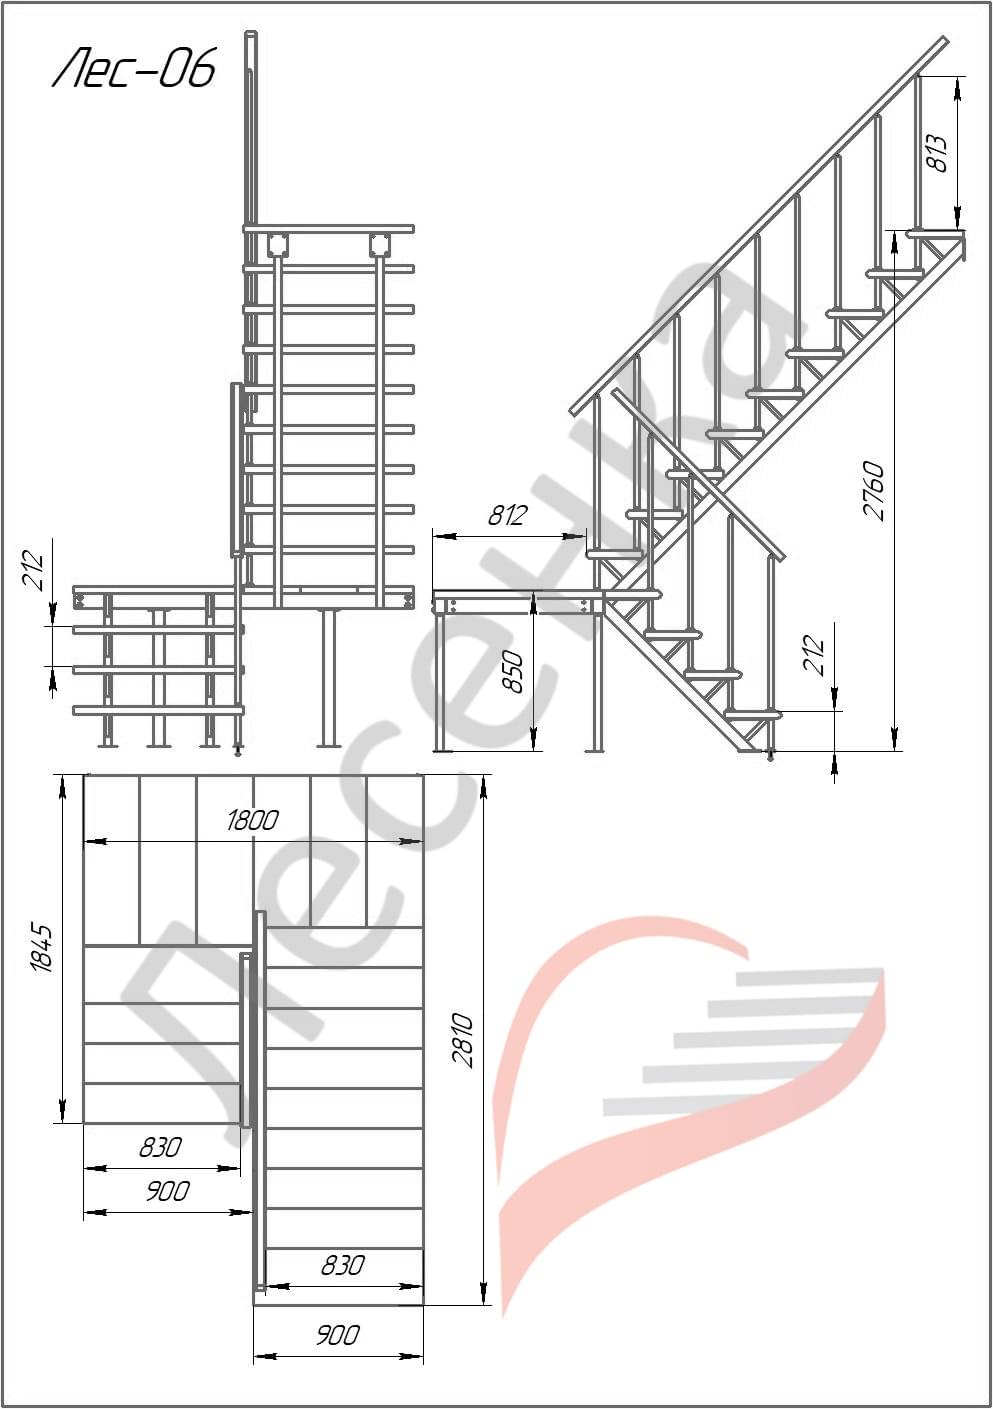 Типы размеров лестницы. Комбинированная межэтажная лестница лес-06 (поворот 180°). Лестница лес-01 универсальная поворот 180. Лестница Престиж ЛП-11 правозаходная. Чертеж лестницы на монокосоуре из металла.